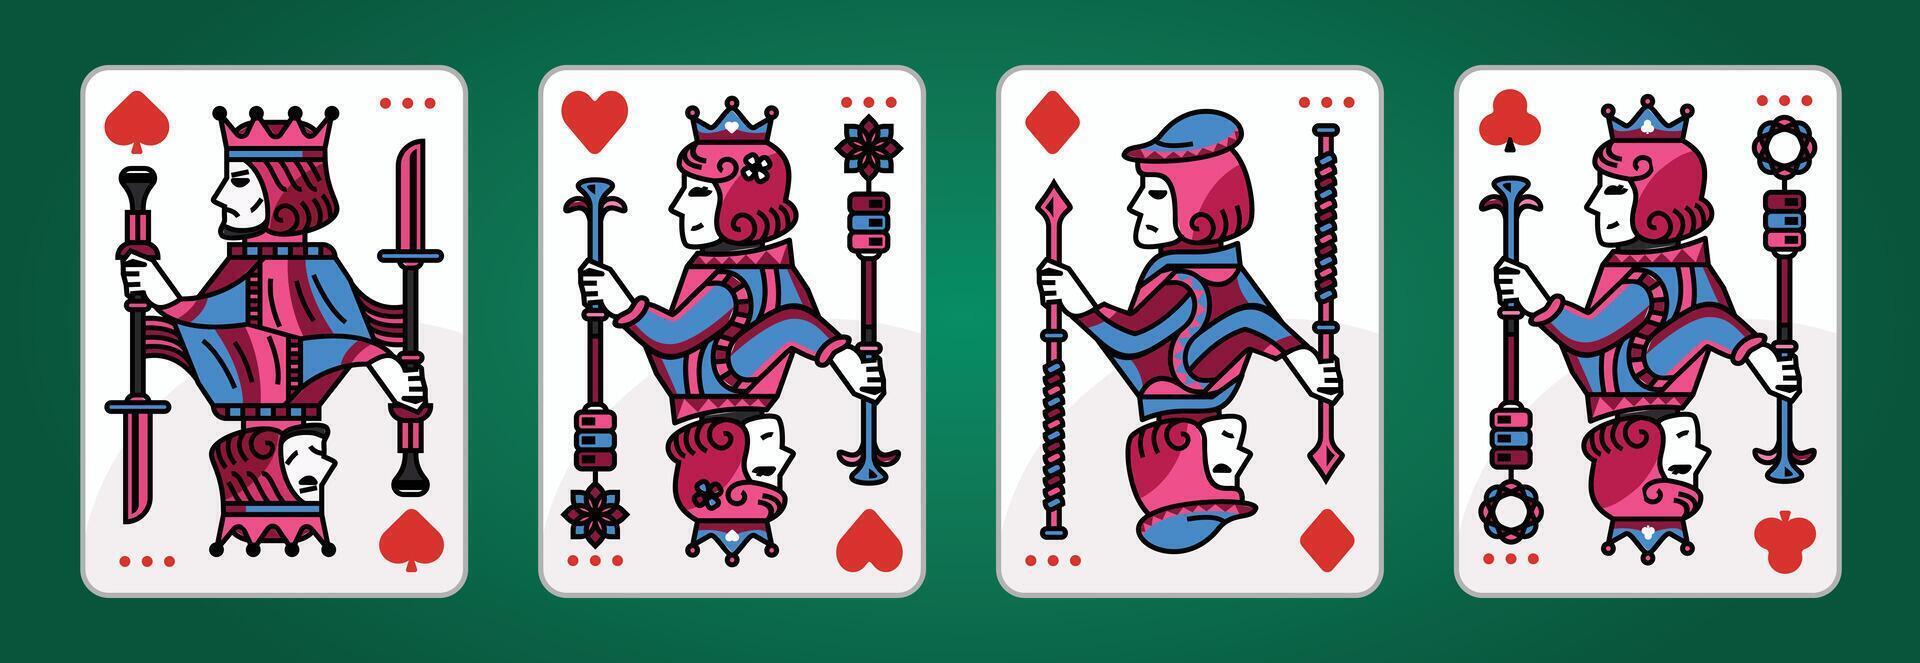 koning en koningin kaart illustratie reeks van harten, spade, diamant en club, Koninklijk kaarten ontwerp verzameling vector